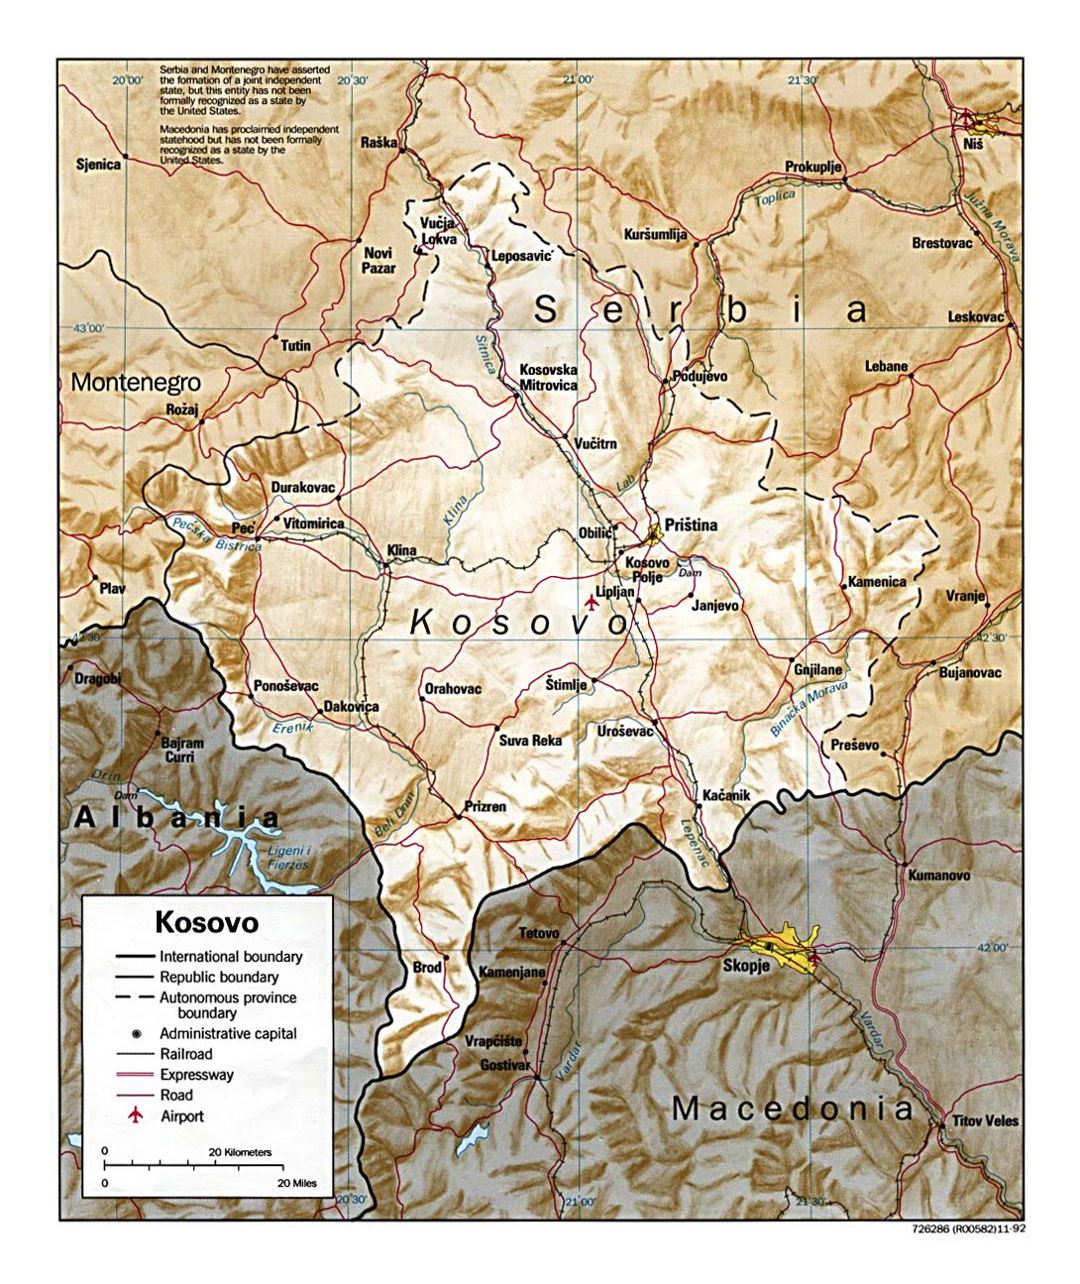 Mapa político detallado de Kosovo con socorro, carreteras, ferrocarriles, ciudades y aeropuertos - 1999